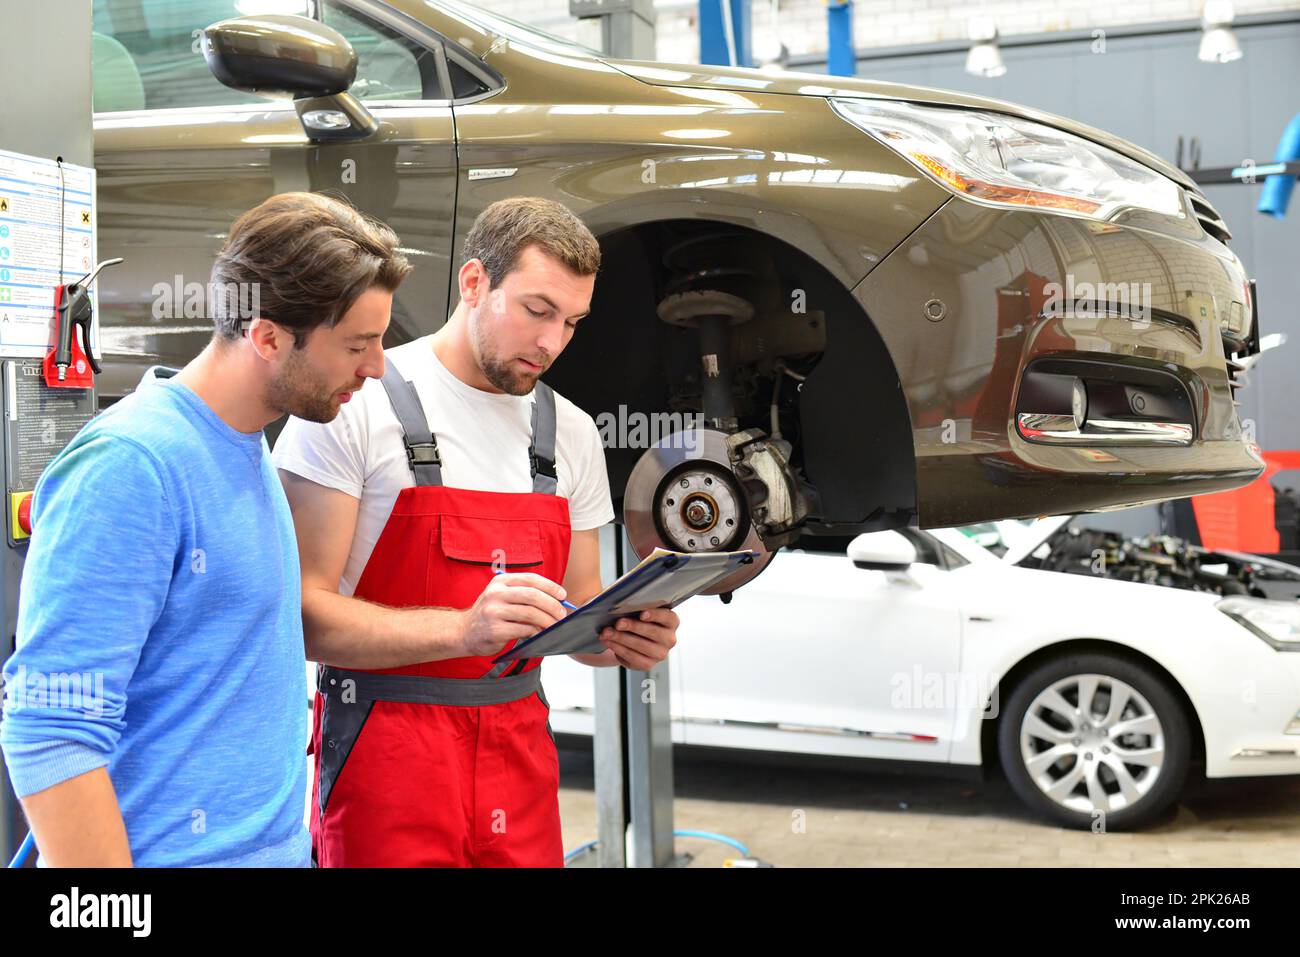 Le service après-vente dans l'atelier de réparation automobile - mécanicien et homme parler de la réparation d'un véhicule Banque D'Images